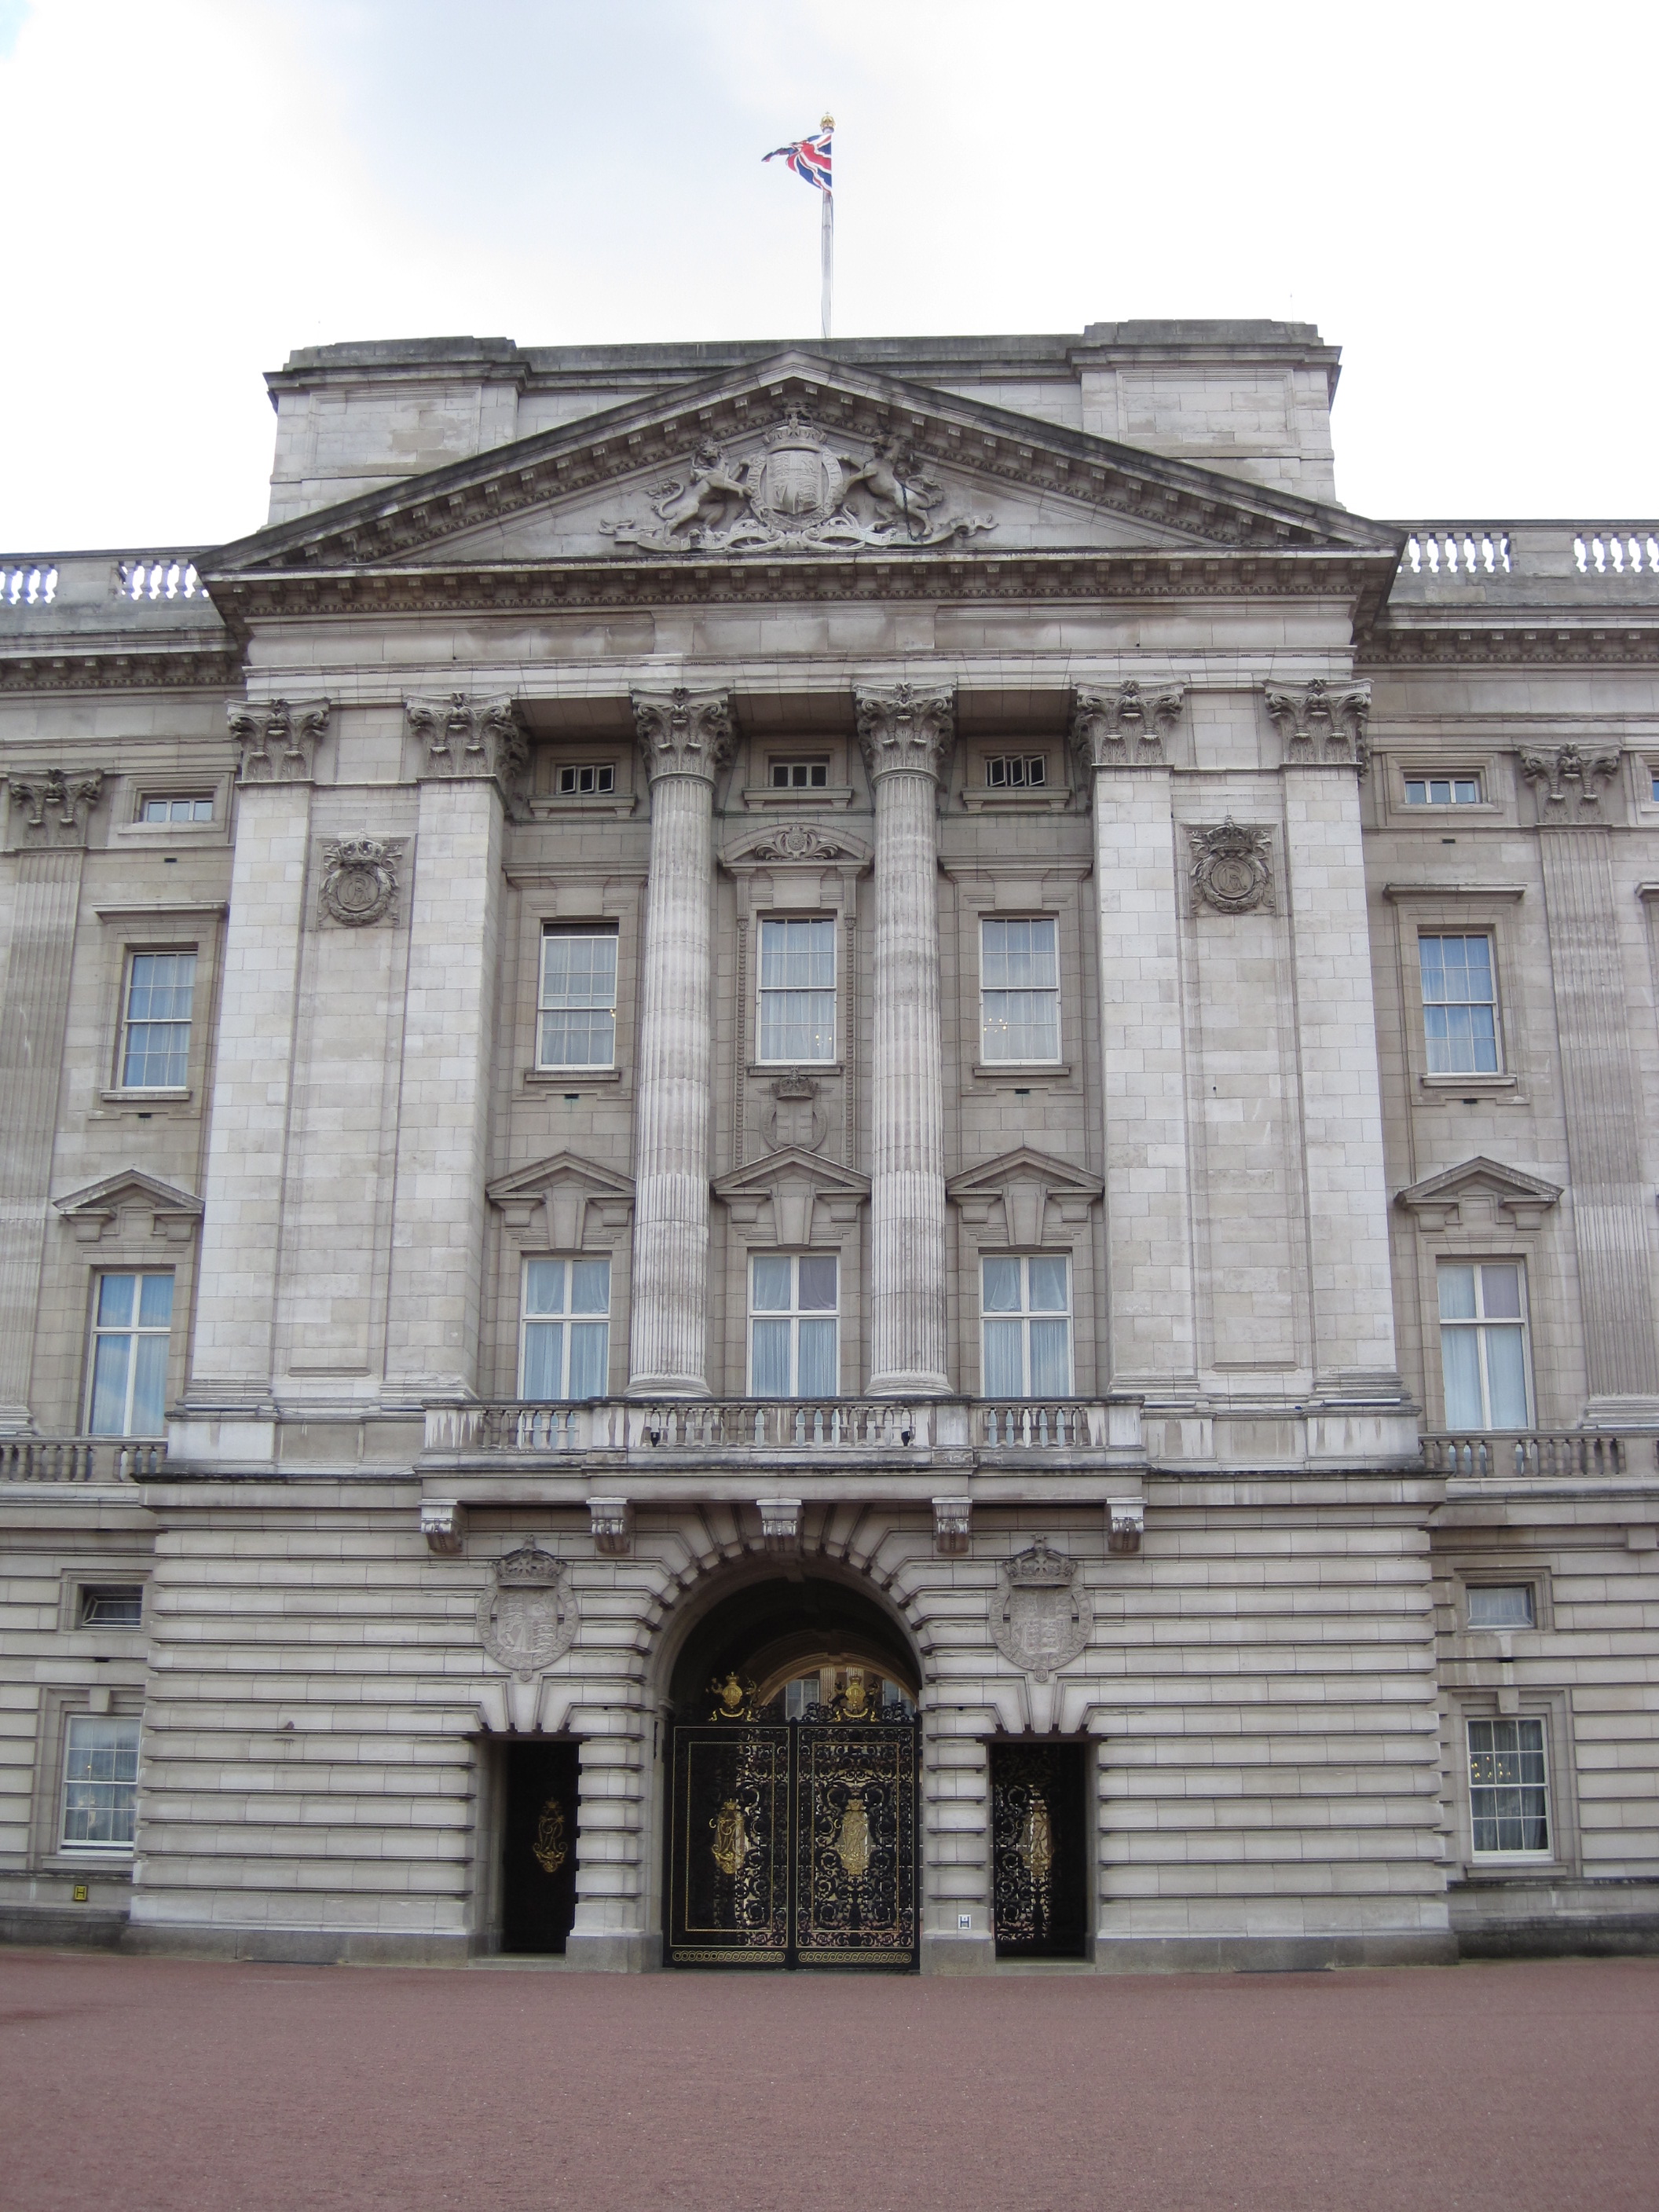 London Places: Buckingham Palace